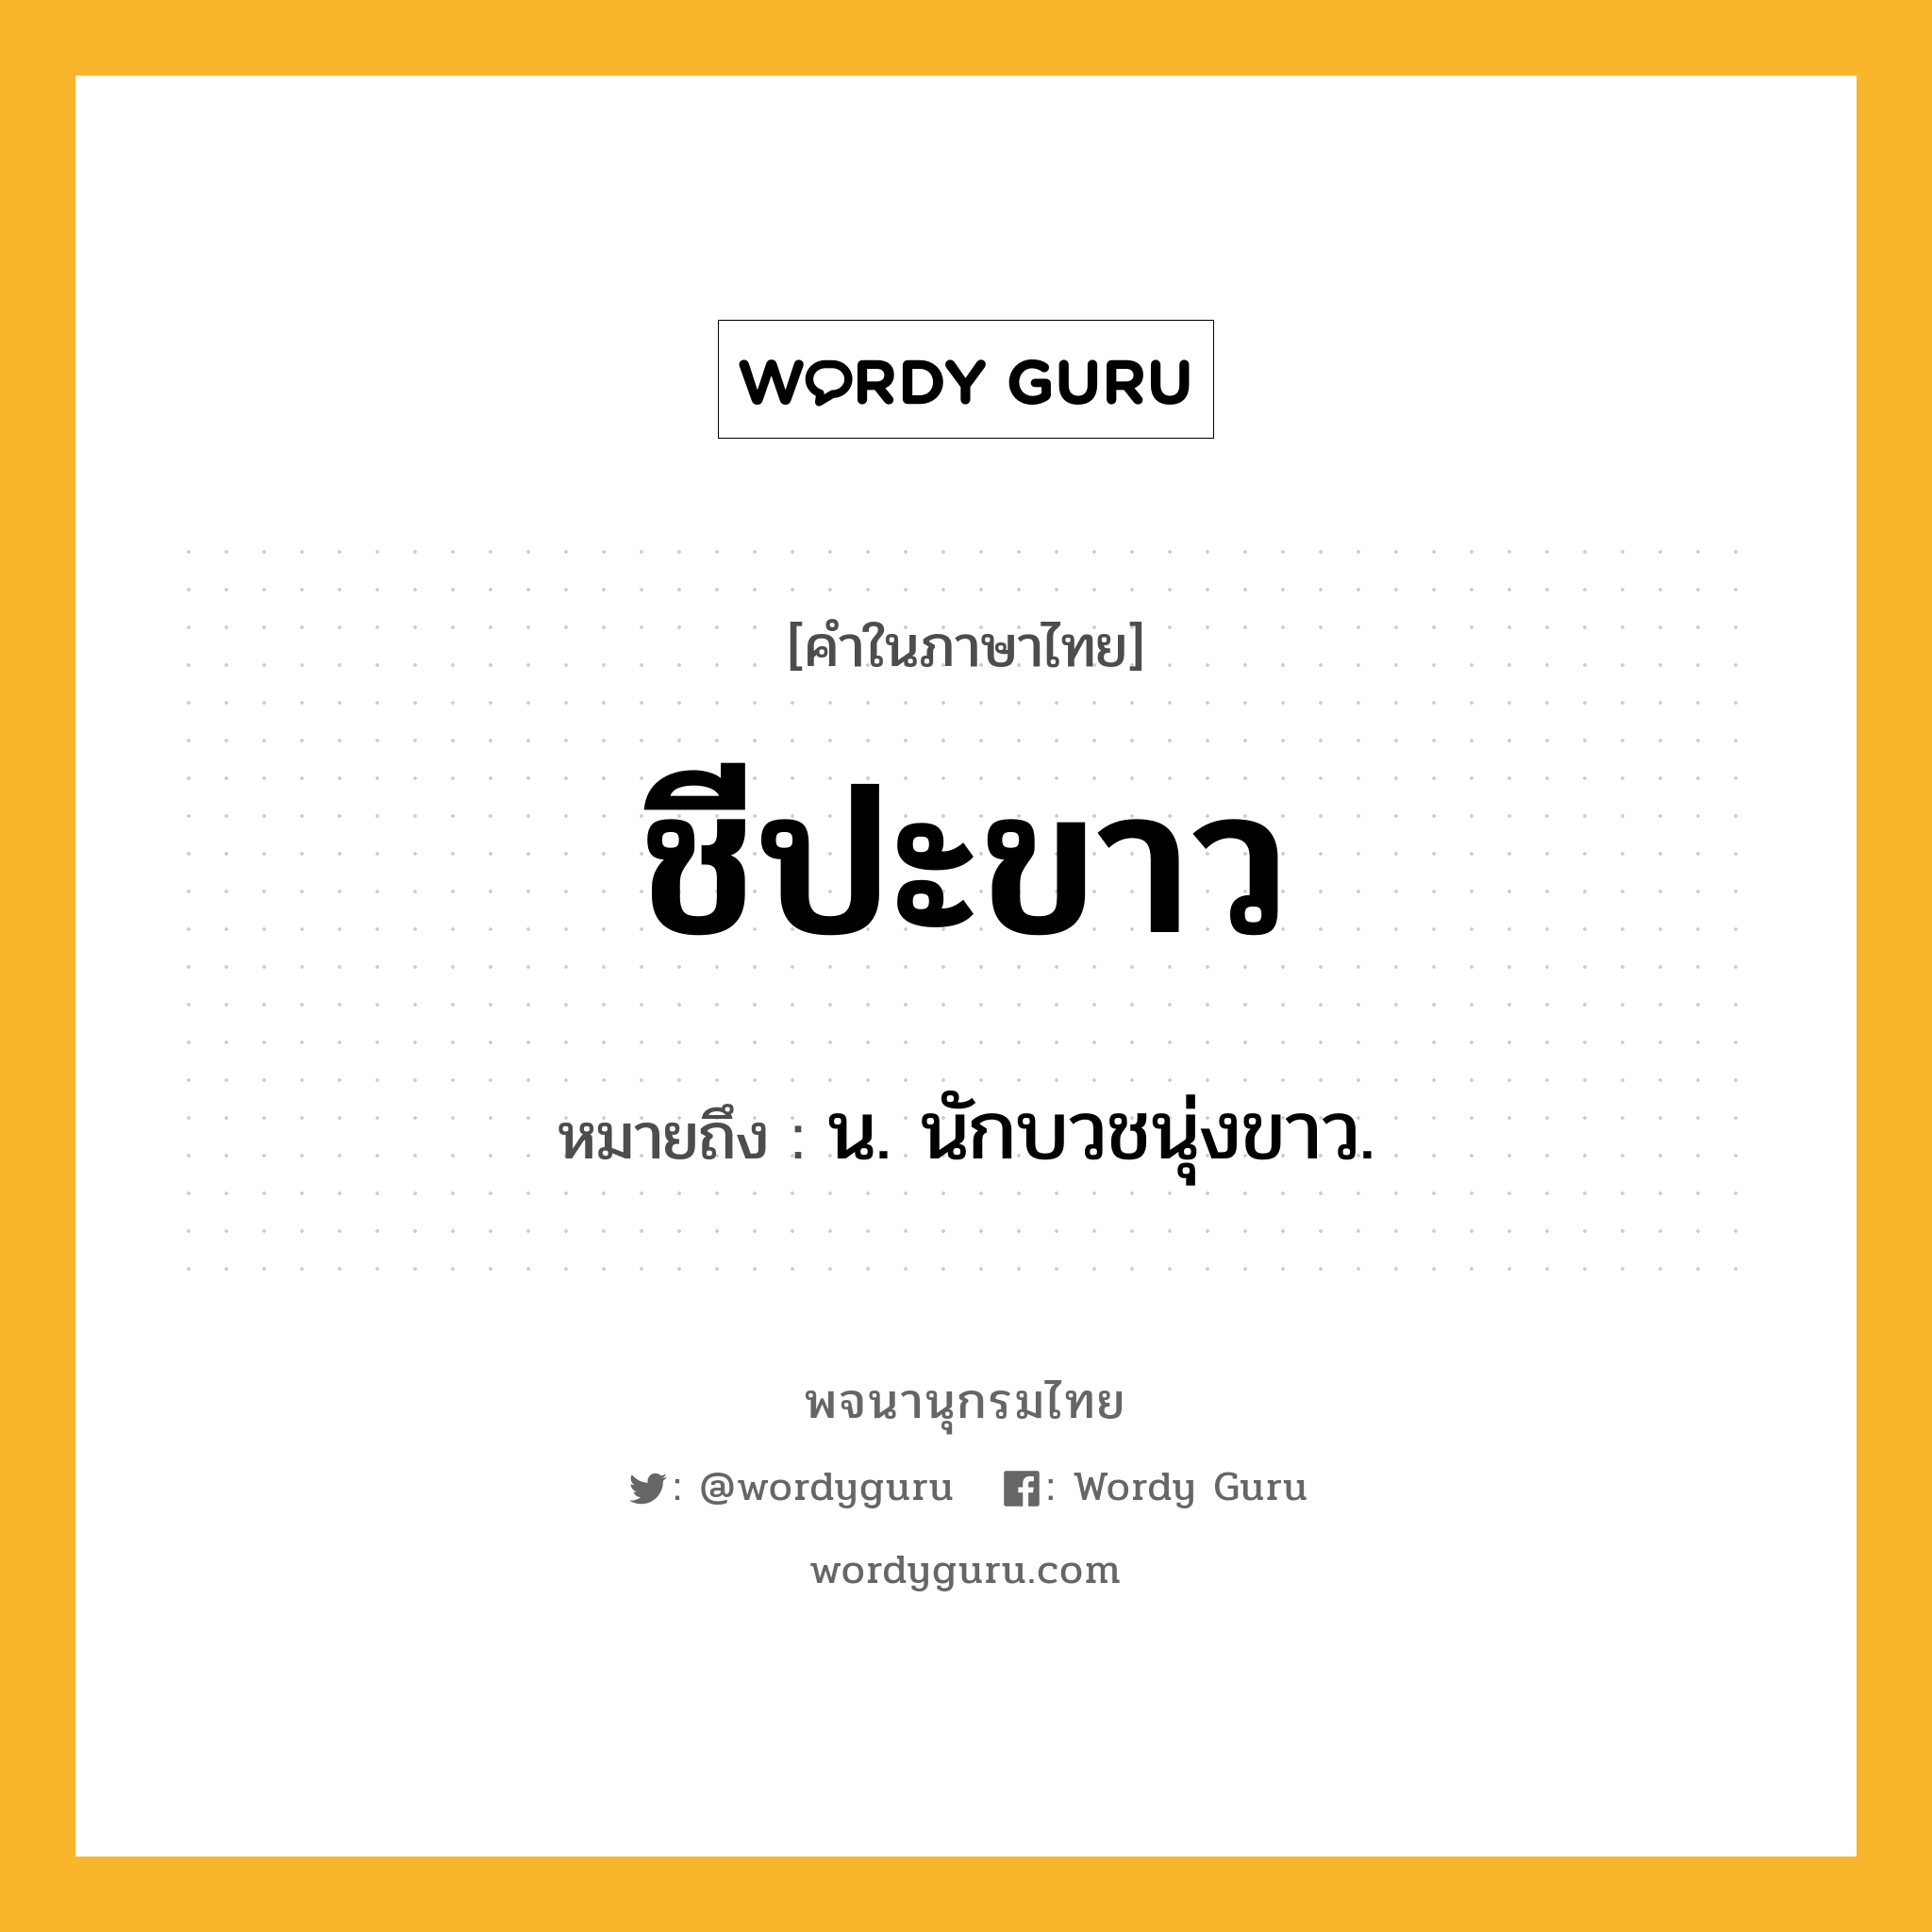 ชีปะขาว ความหมาย หมายถึงอะไร?, คำในภาษาไทย ชีปะขาว หมายถึง น. นักบวชนุ่งขาว.